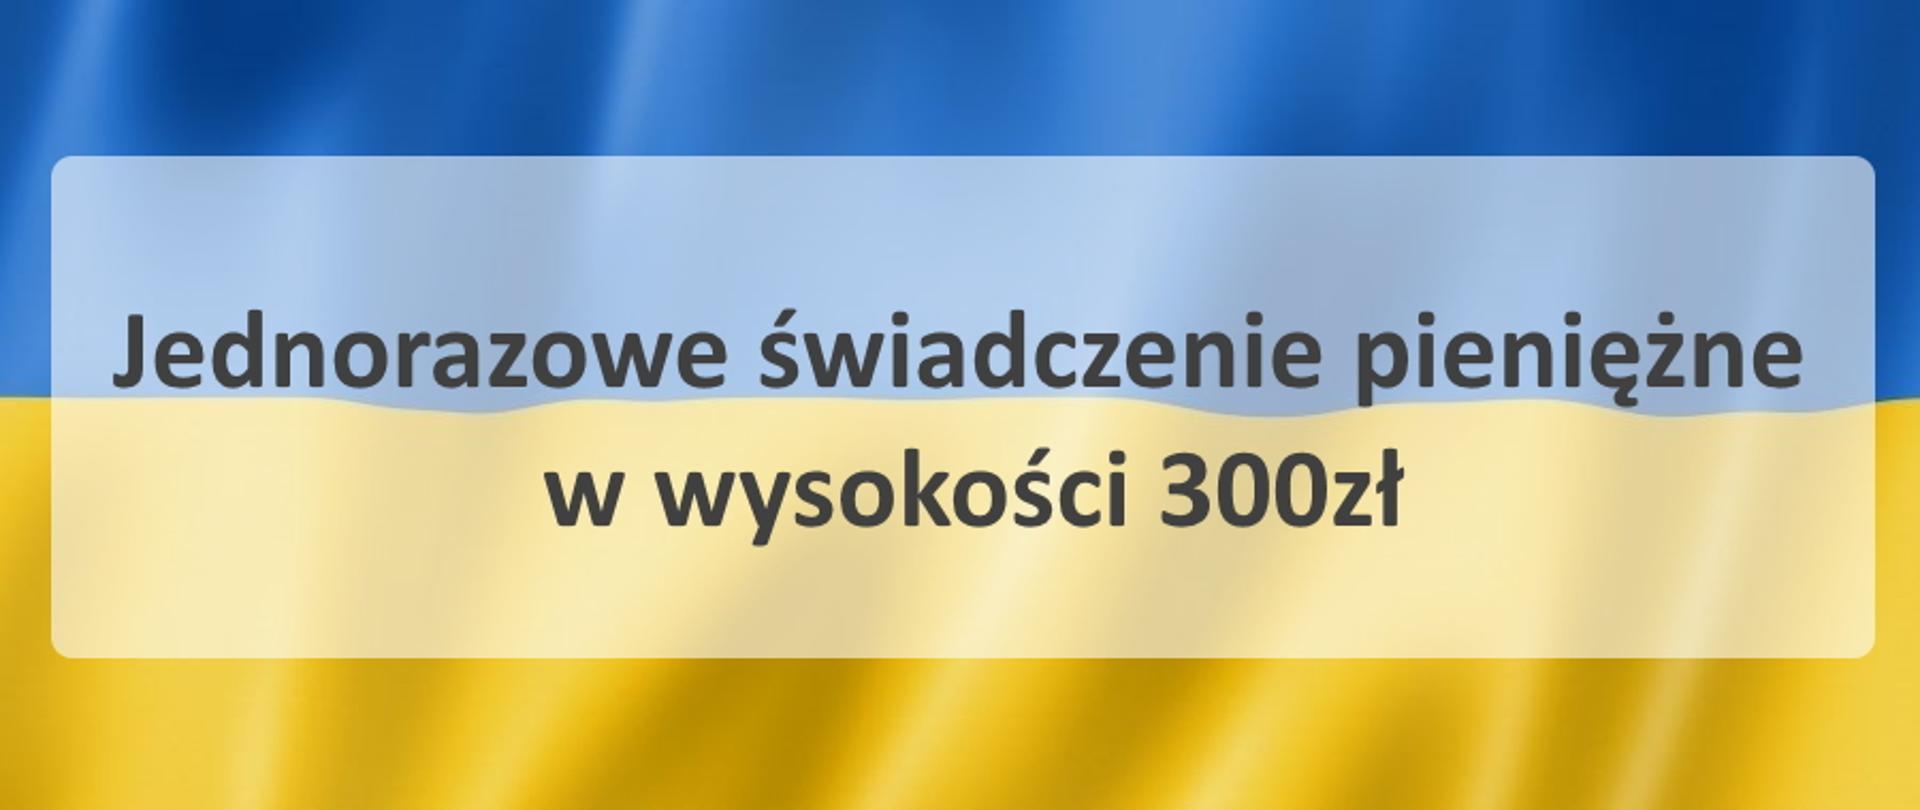 Flaga Ukrainy, Jednorazowe świadczenie pieniężne w wysokości 300zł